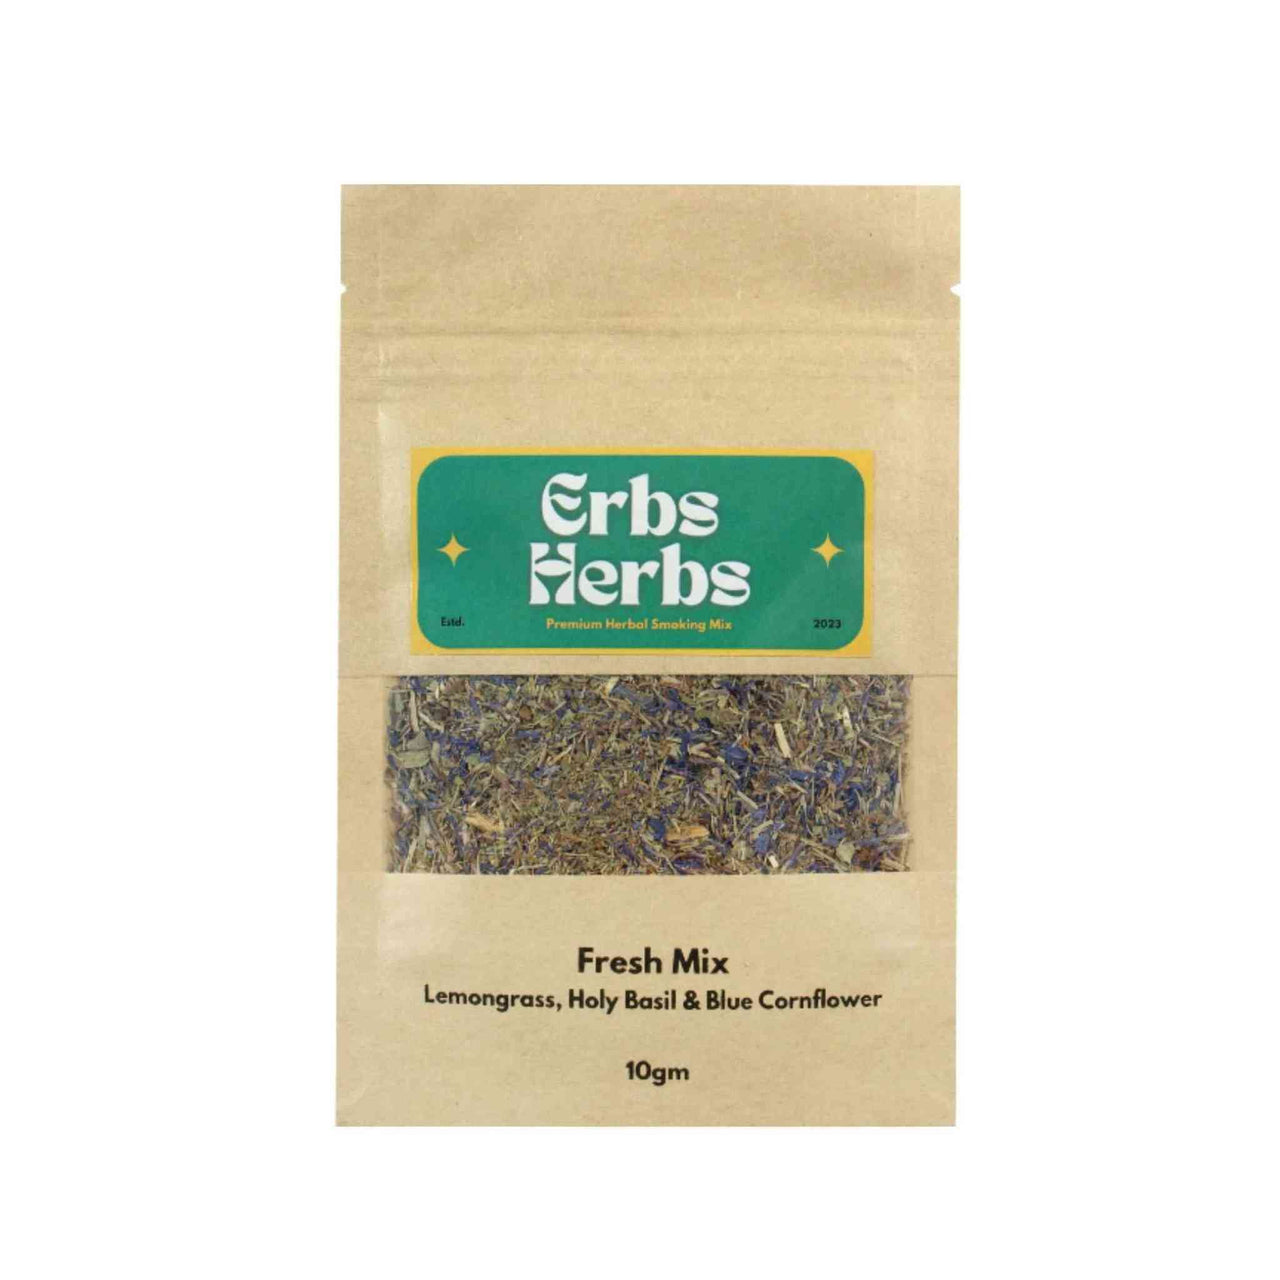 ErbsHerbs - Fresh Mix Pack of 1